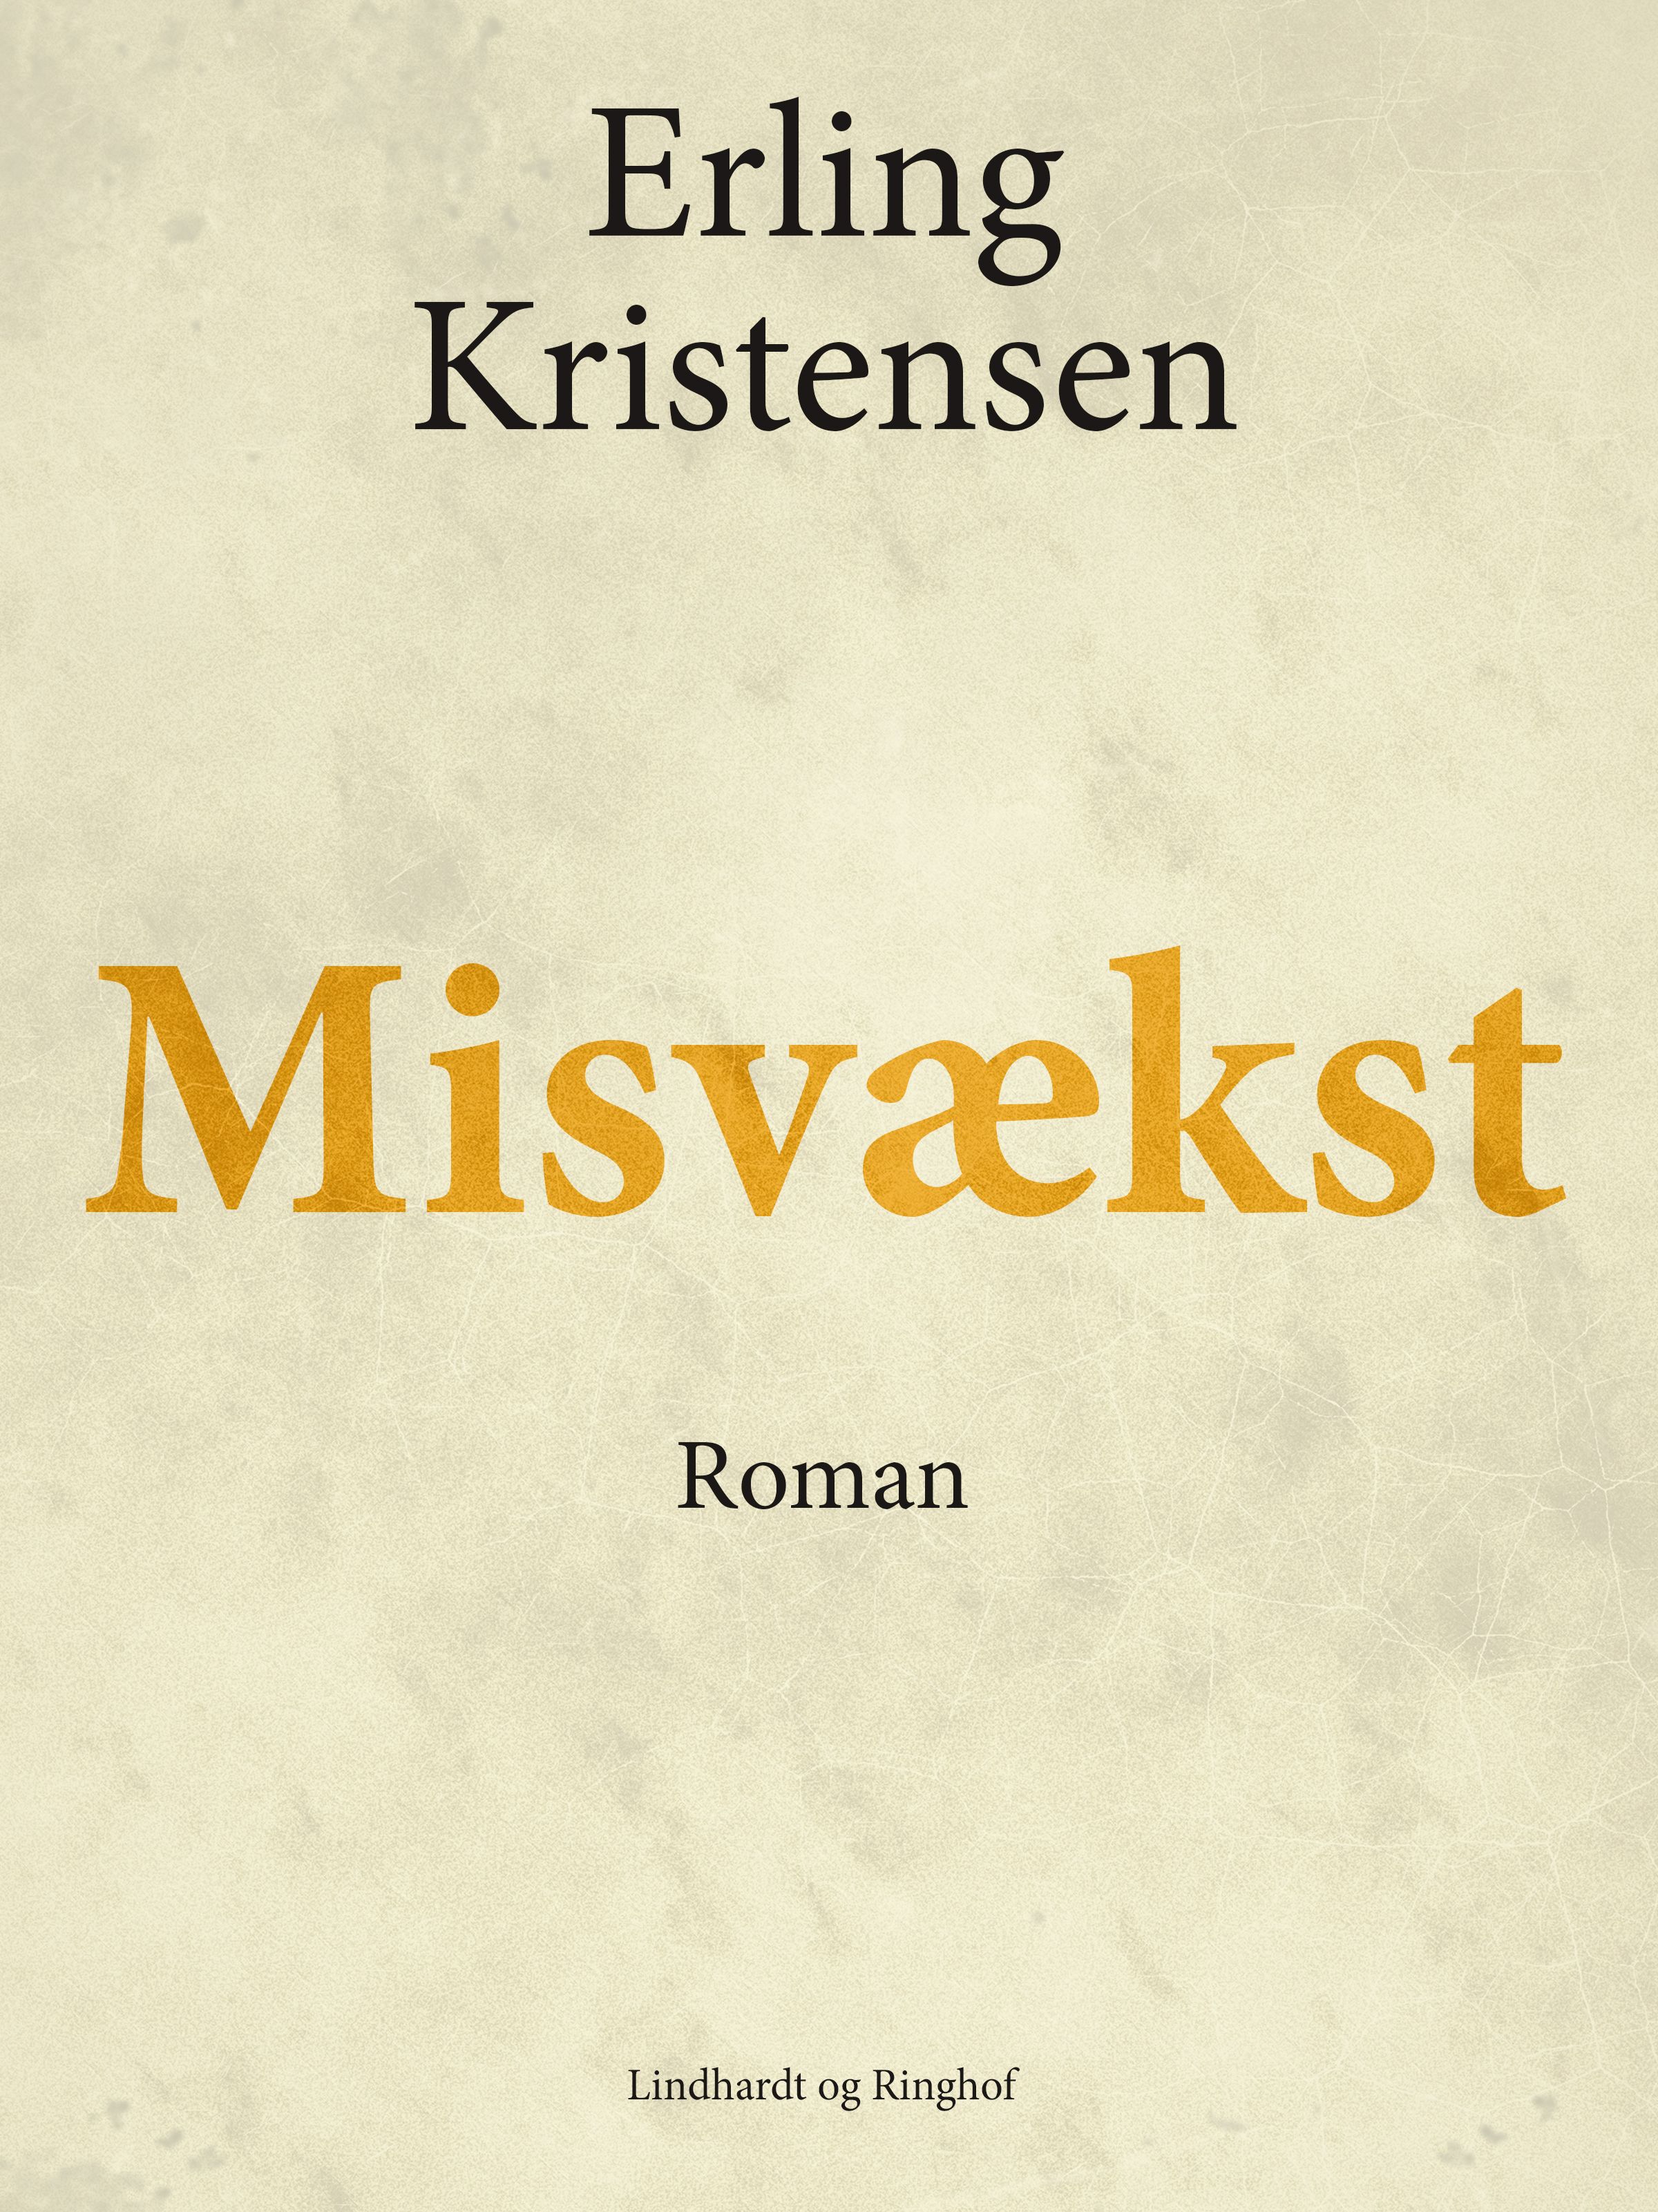 Misvækst, e-bog af Erling Kristensen